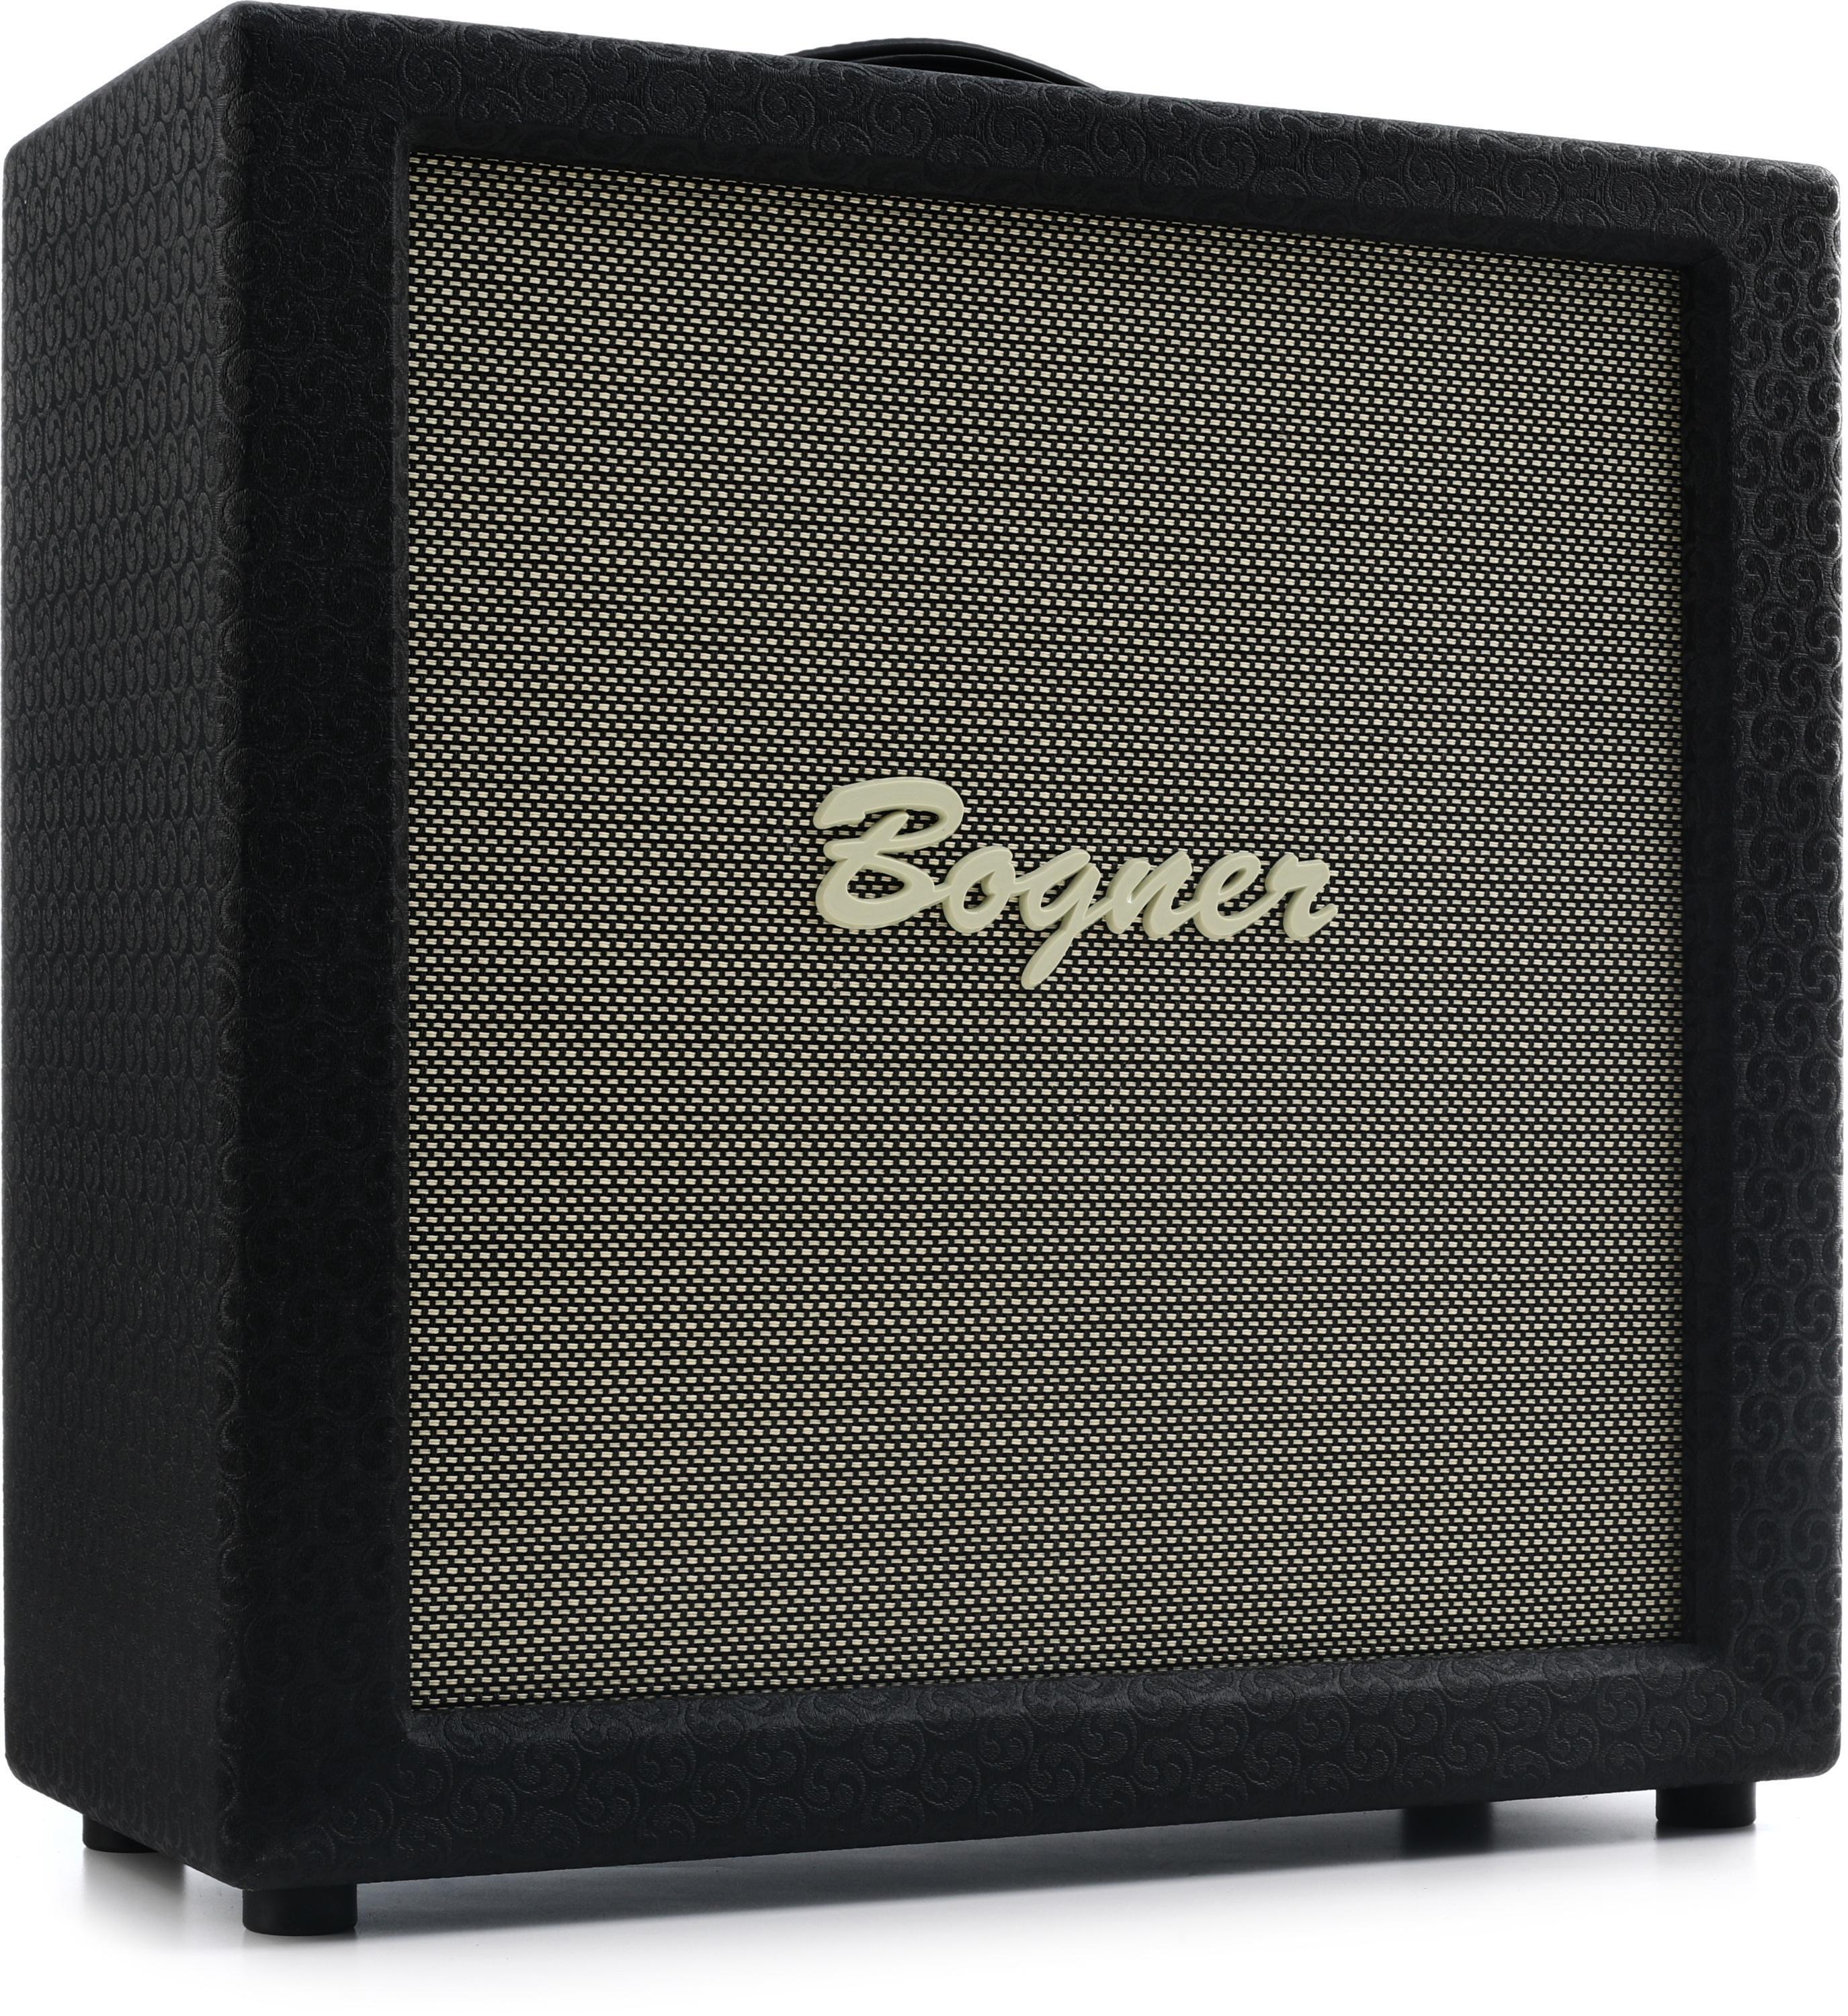 Bogner 2x12 Inch 50 Watt Open